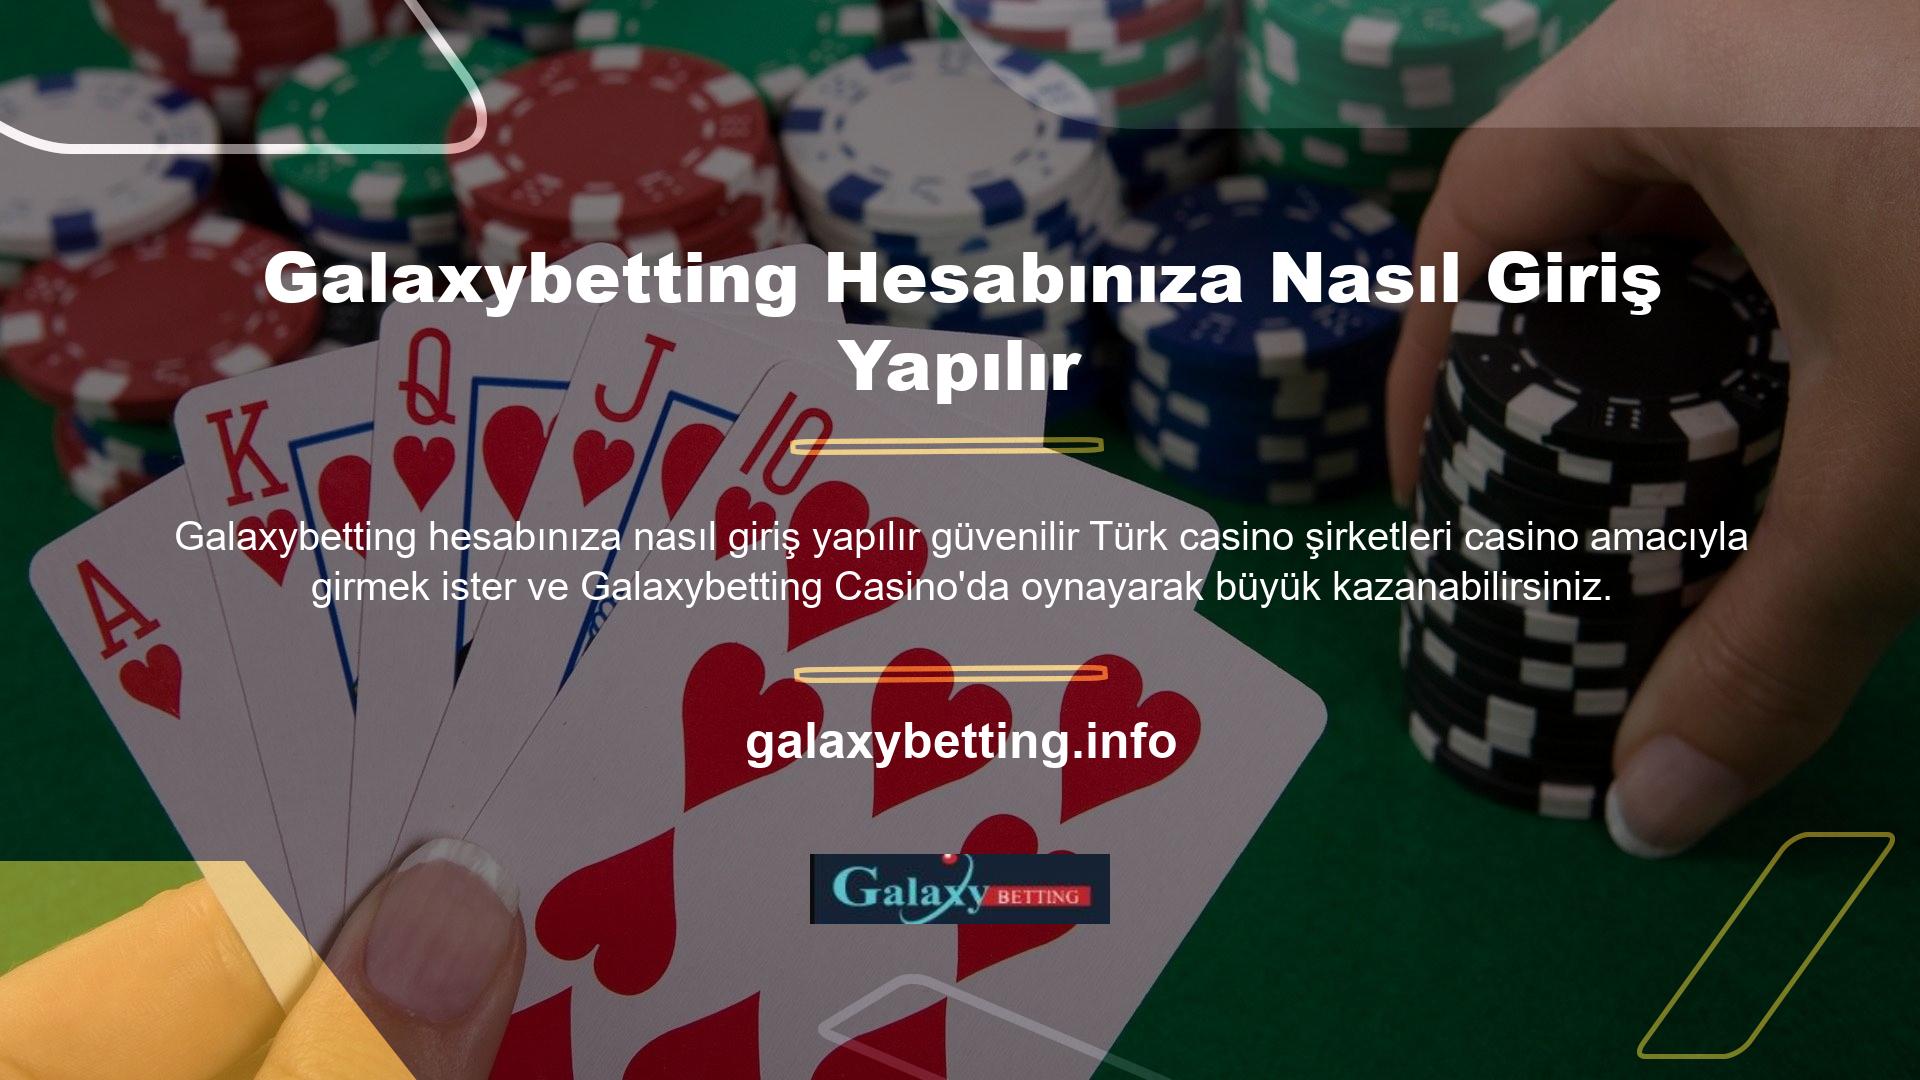 Ancak Galaxybetting, dünyayı hayrete düşüren pokerde en iyi skorlara sahip en iyi bahisçidir